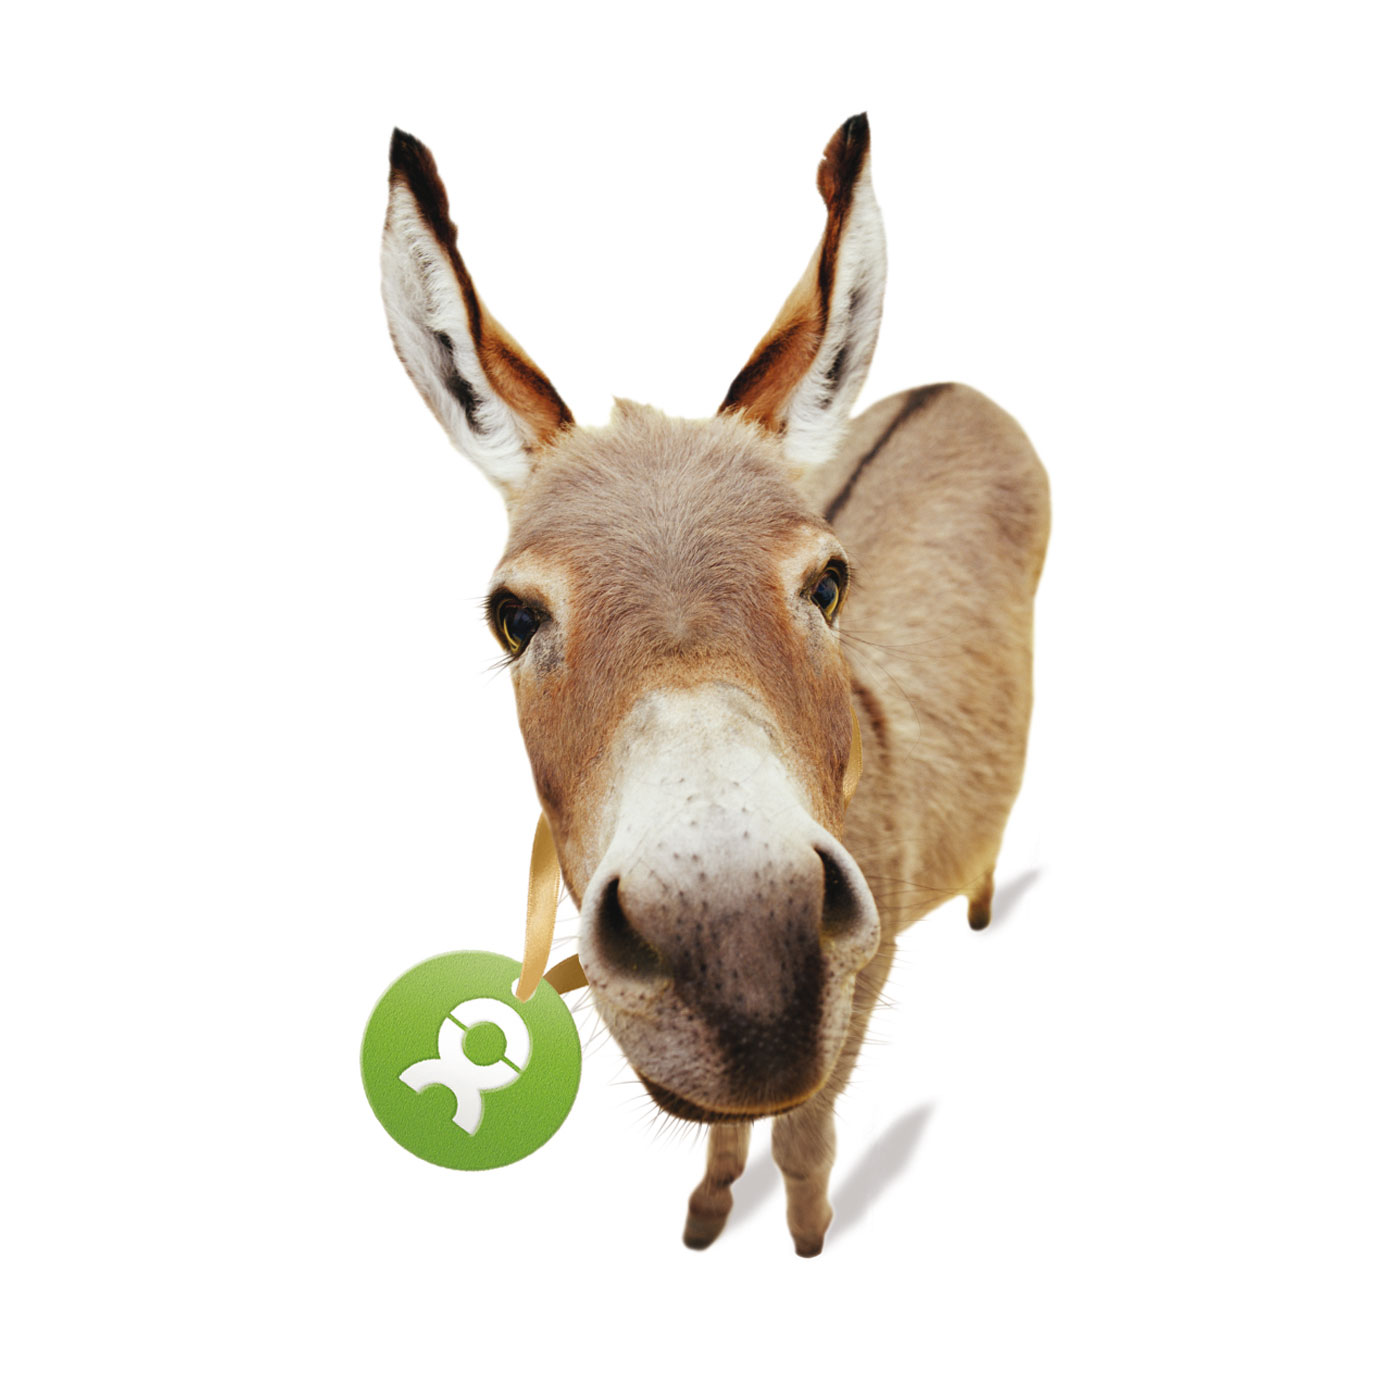 Beispiel Geschenk Spende Esel mit Oxfam-Ettiquette um den Hals